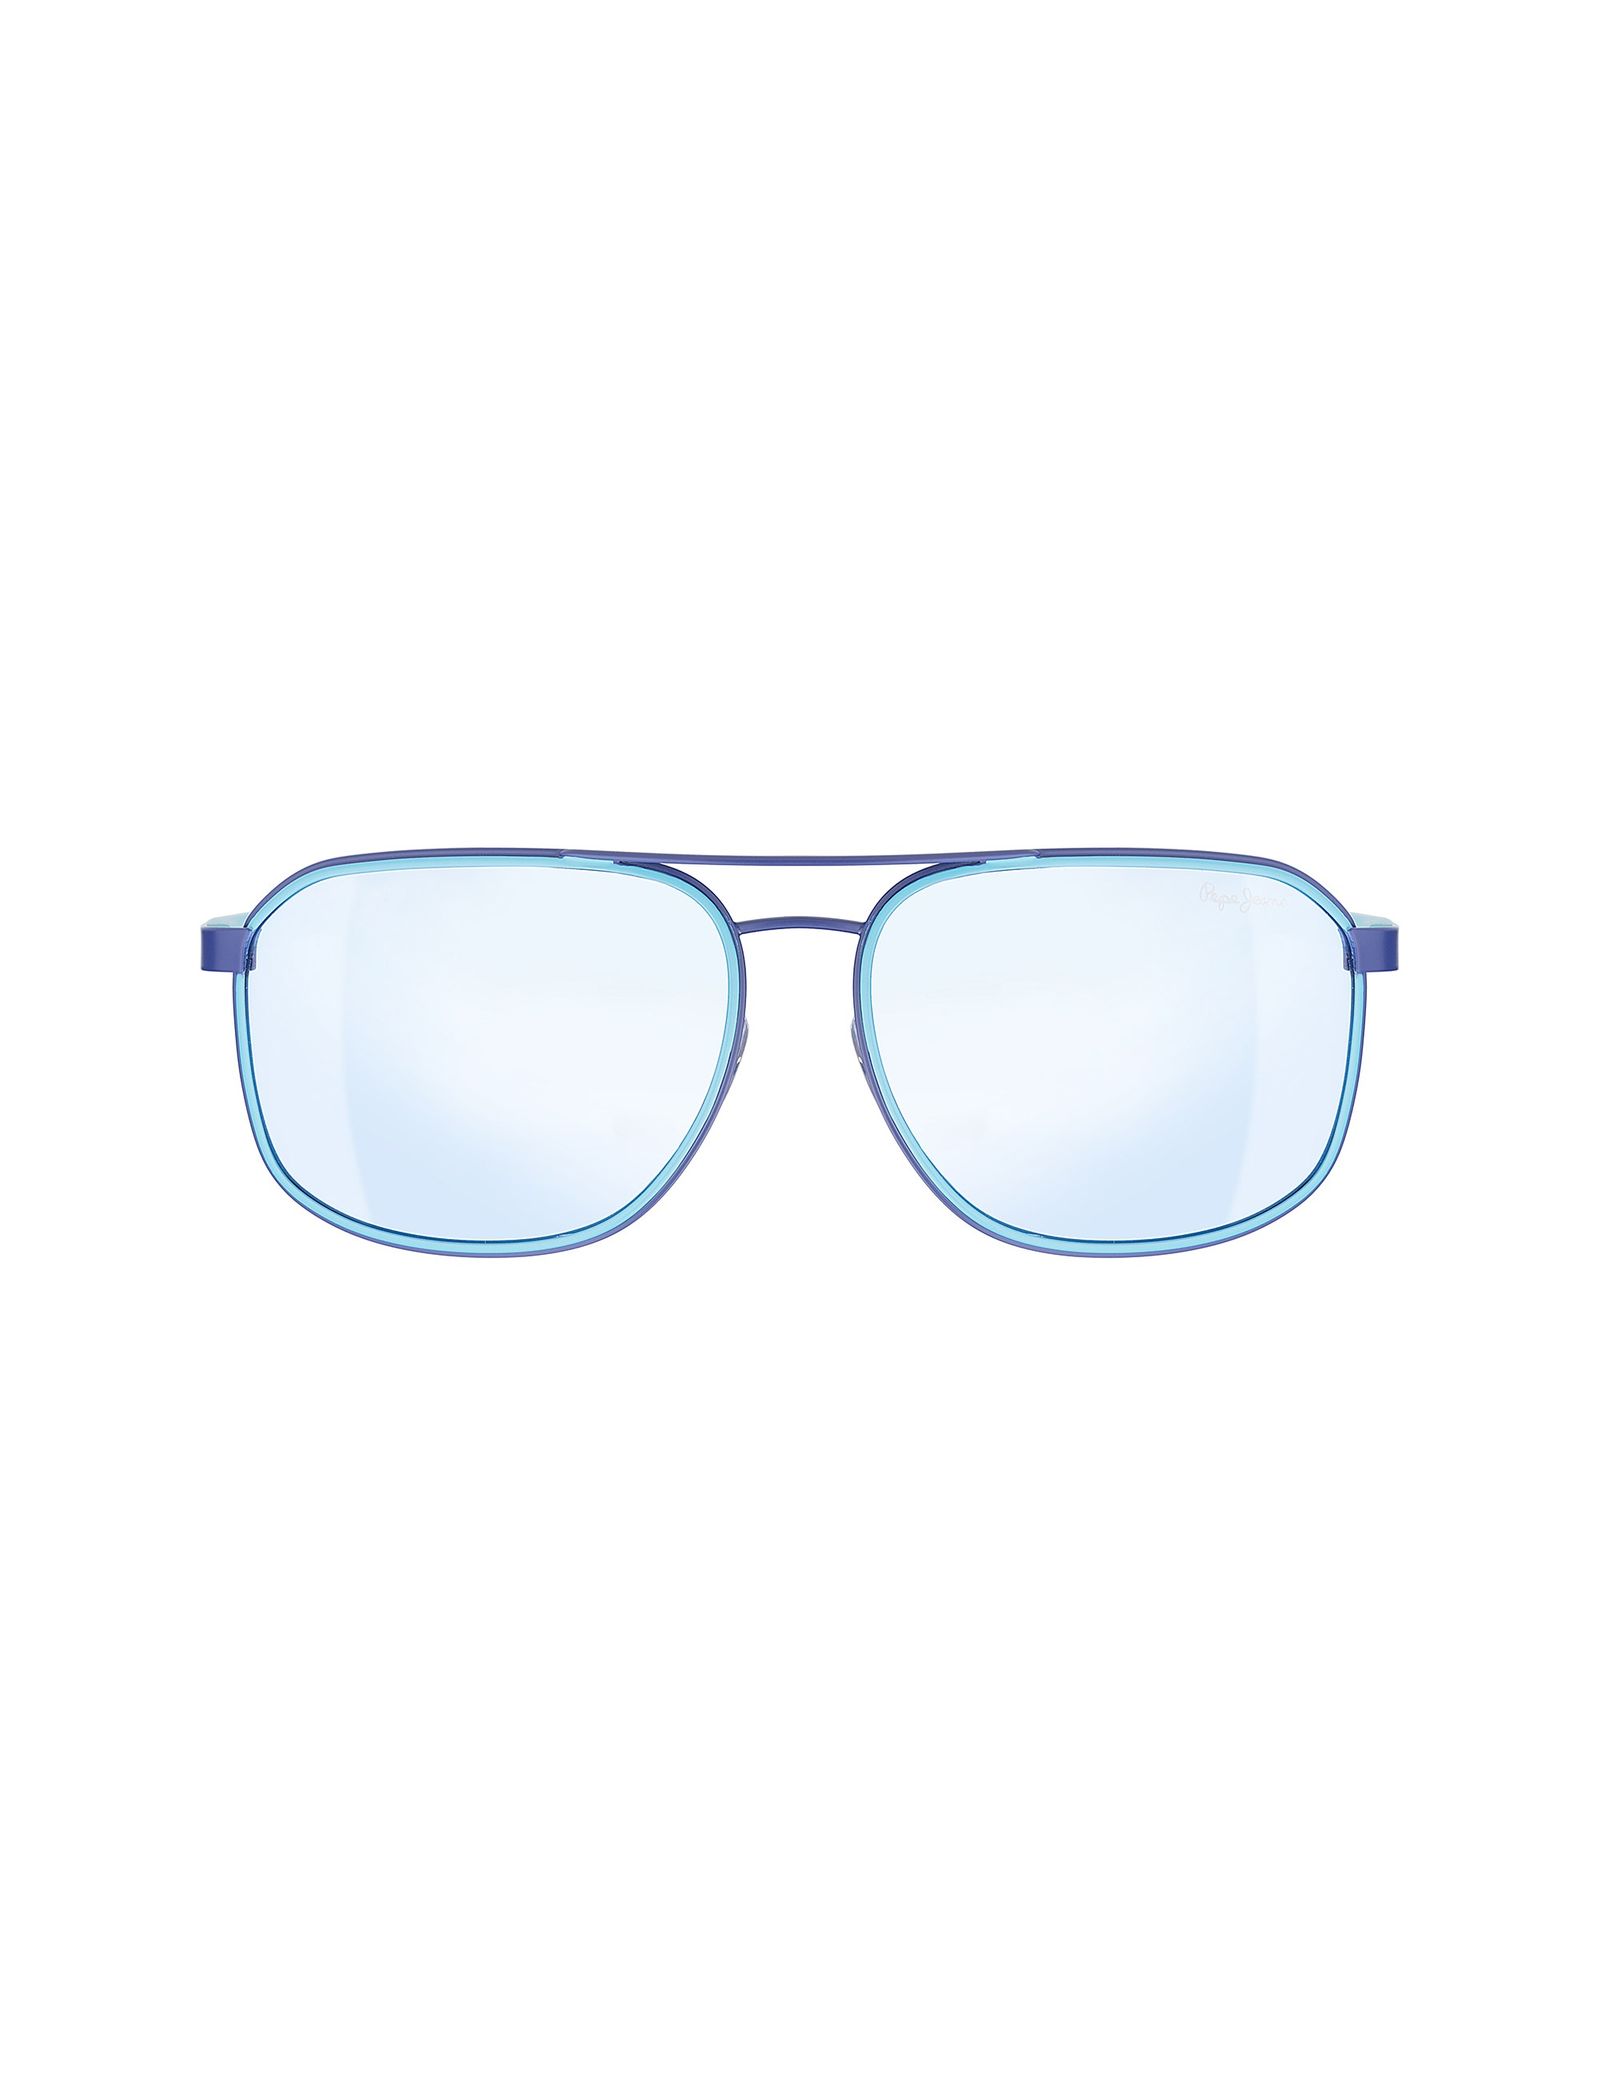 عینک آفتابی خلبانی زنانه - پپه جینز - آبي - 1